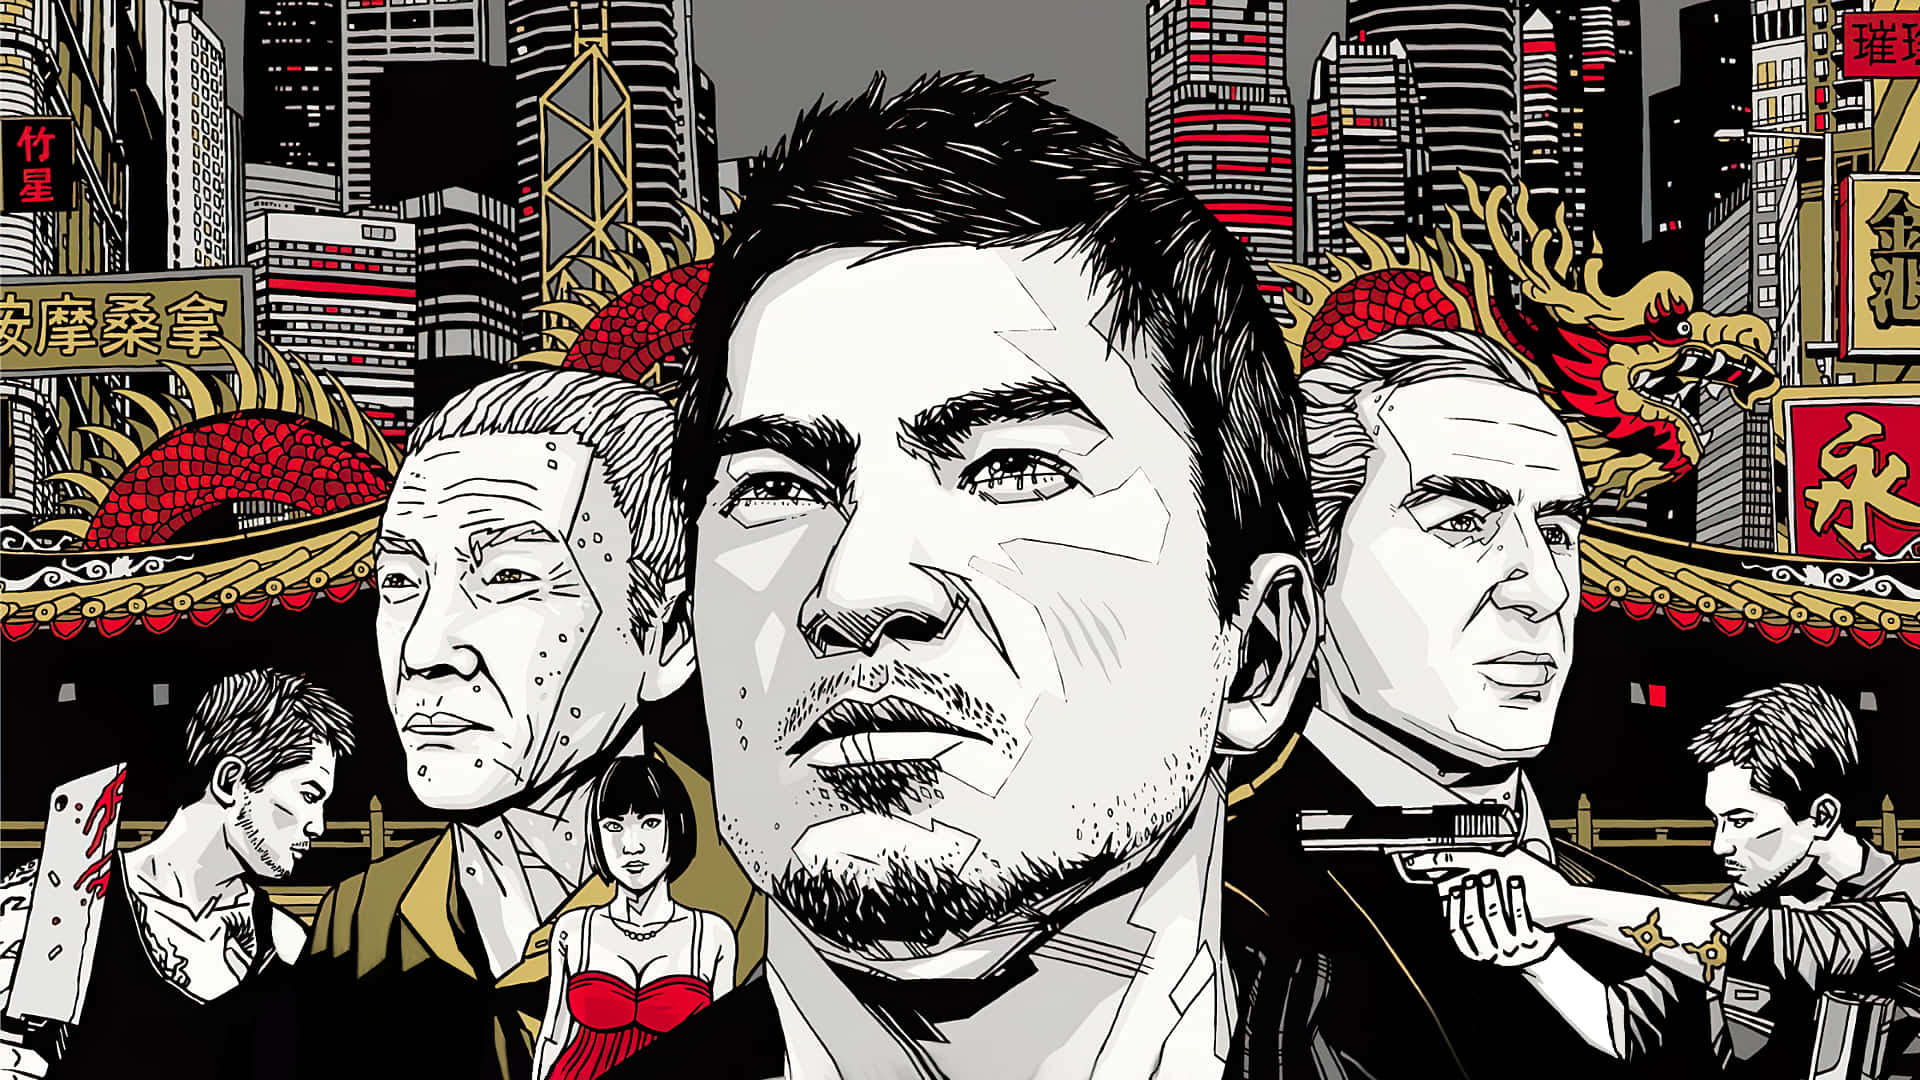 Tage undercover med Wei Shen og oplev den spændende kriminelle verden i Hong Kong og Shanghai i Sleeping Dogs 2. Wallpaper